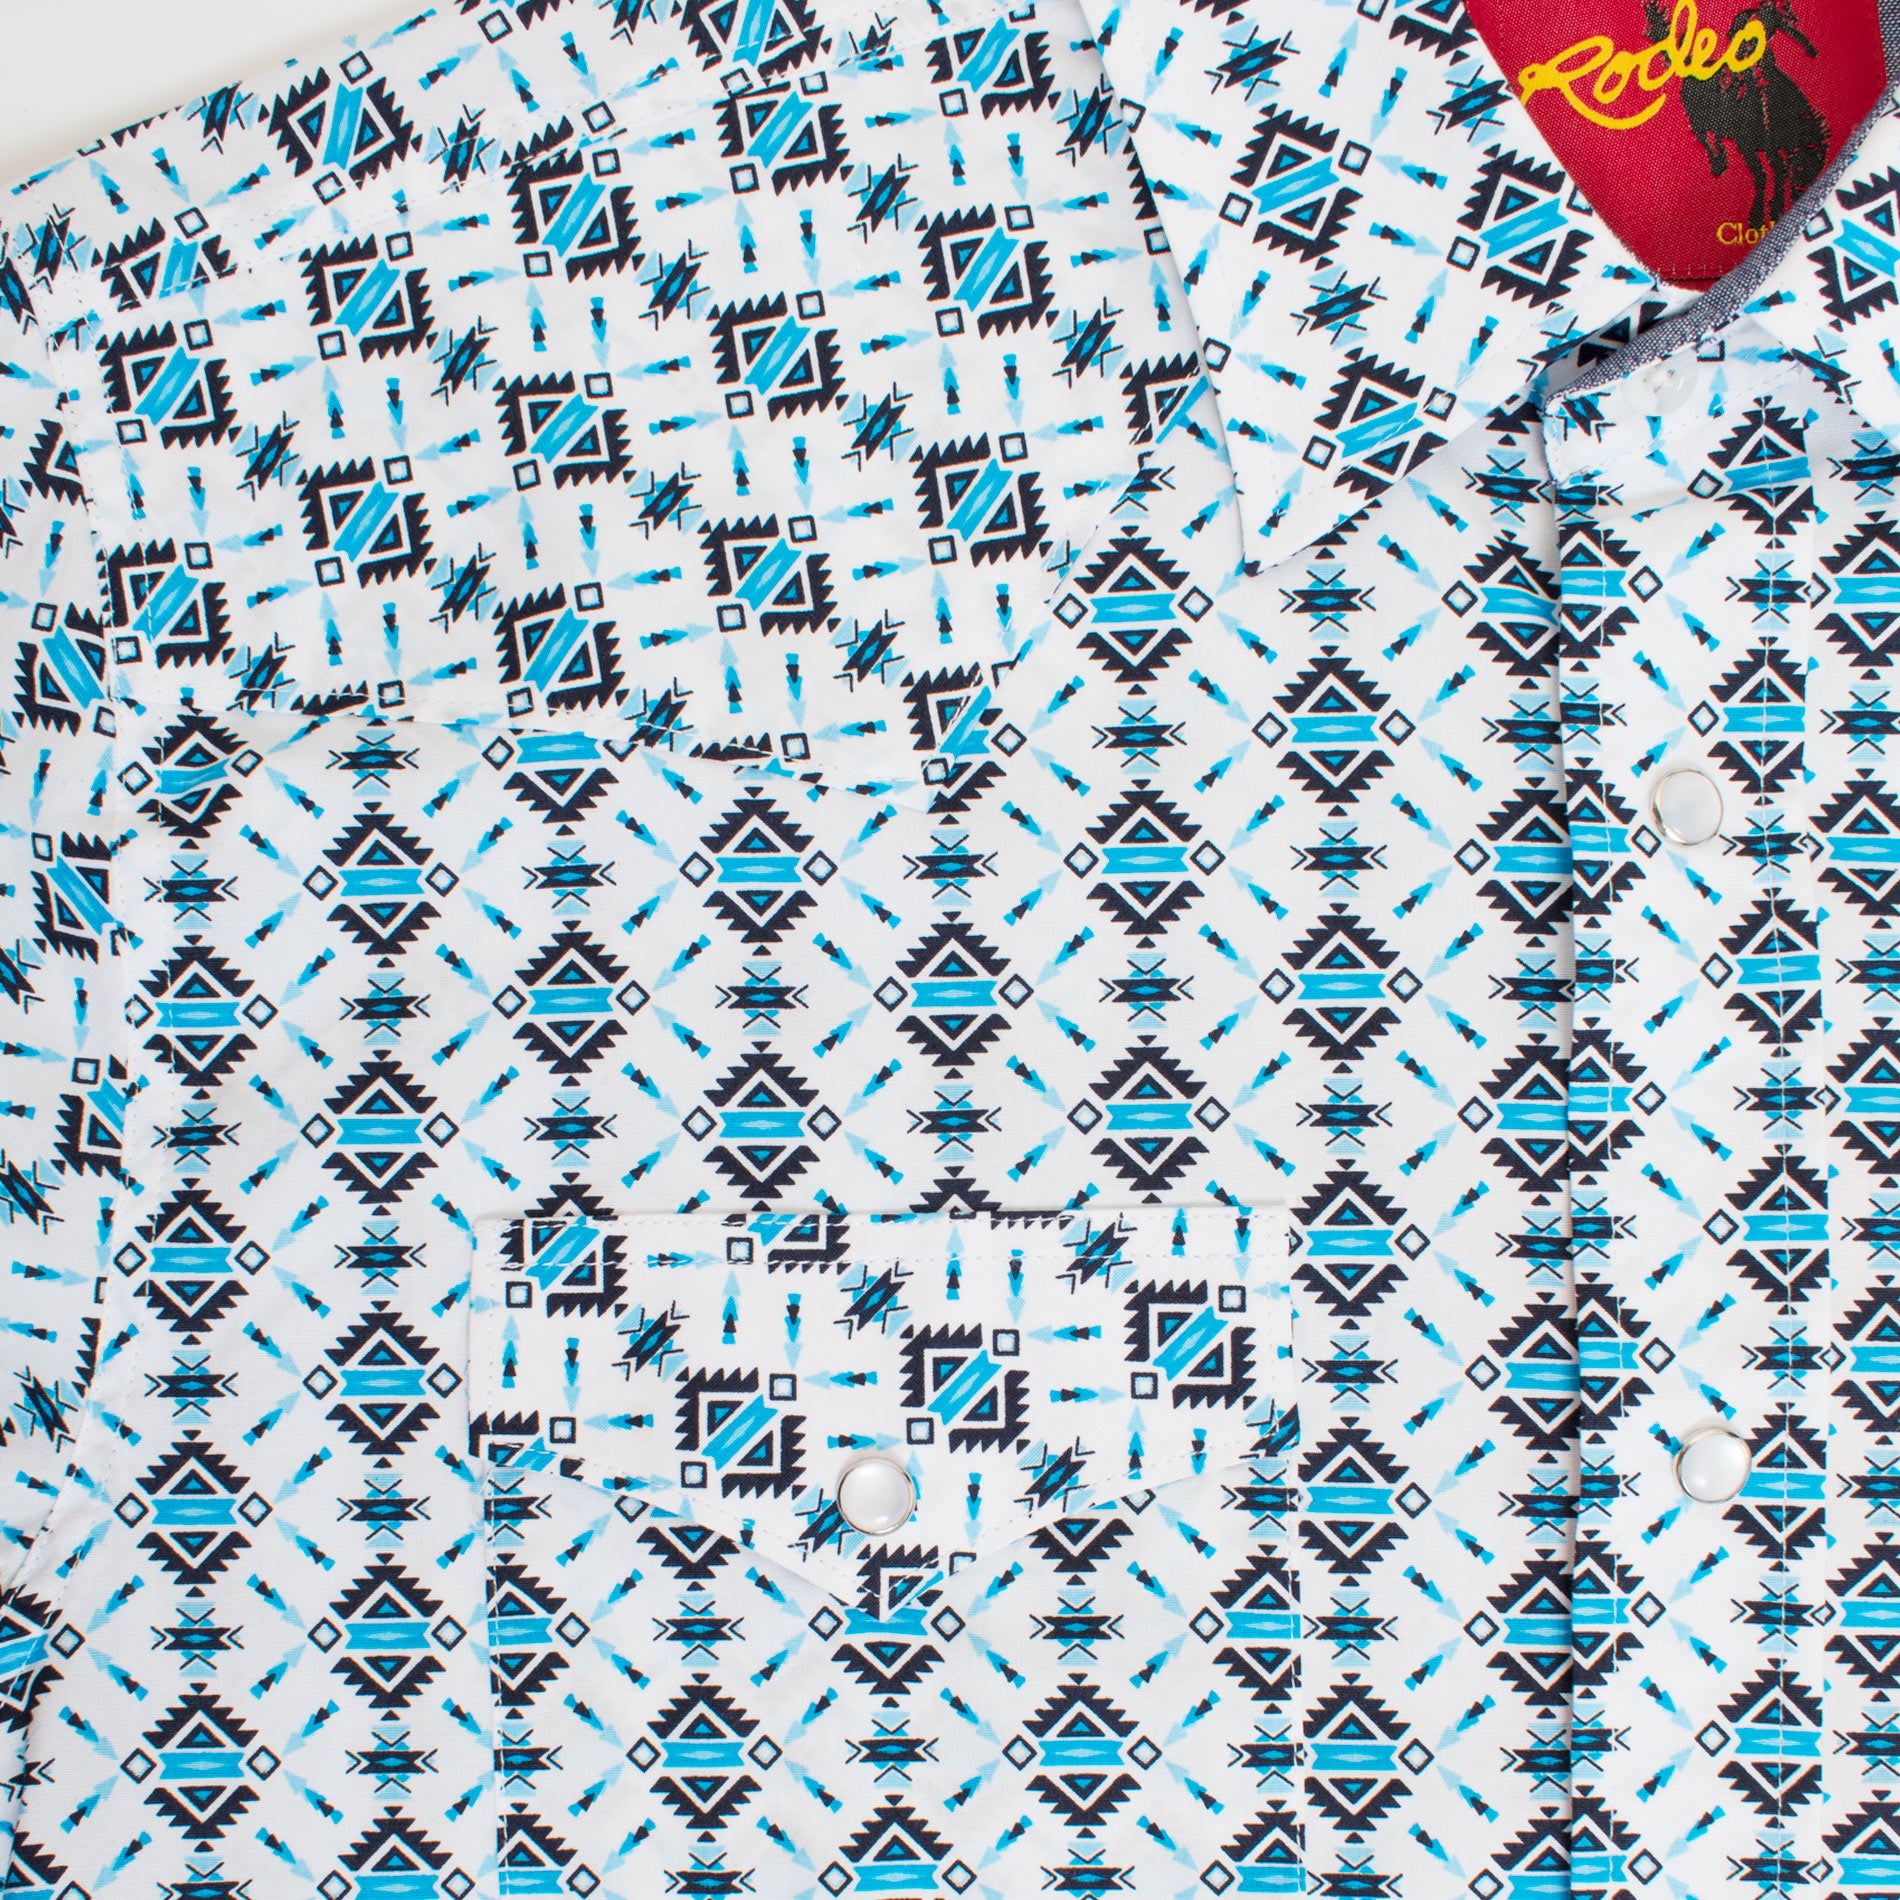 Men's Western Pearl Snap Aztec Print Shirt - PS100L-177